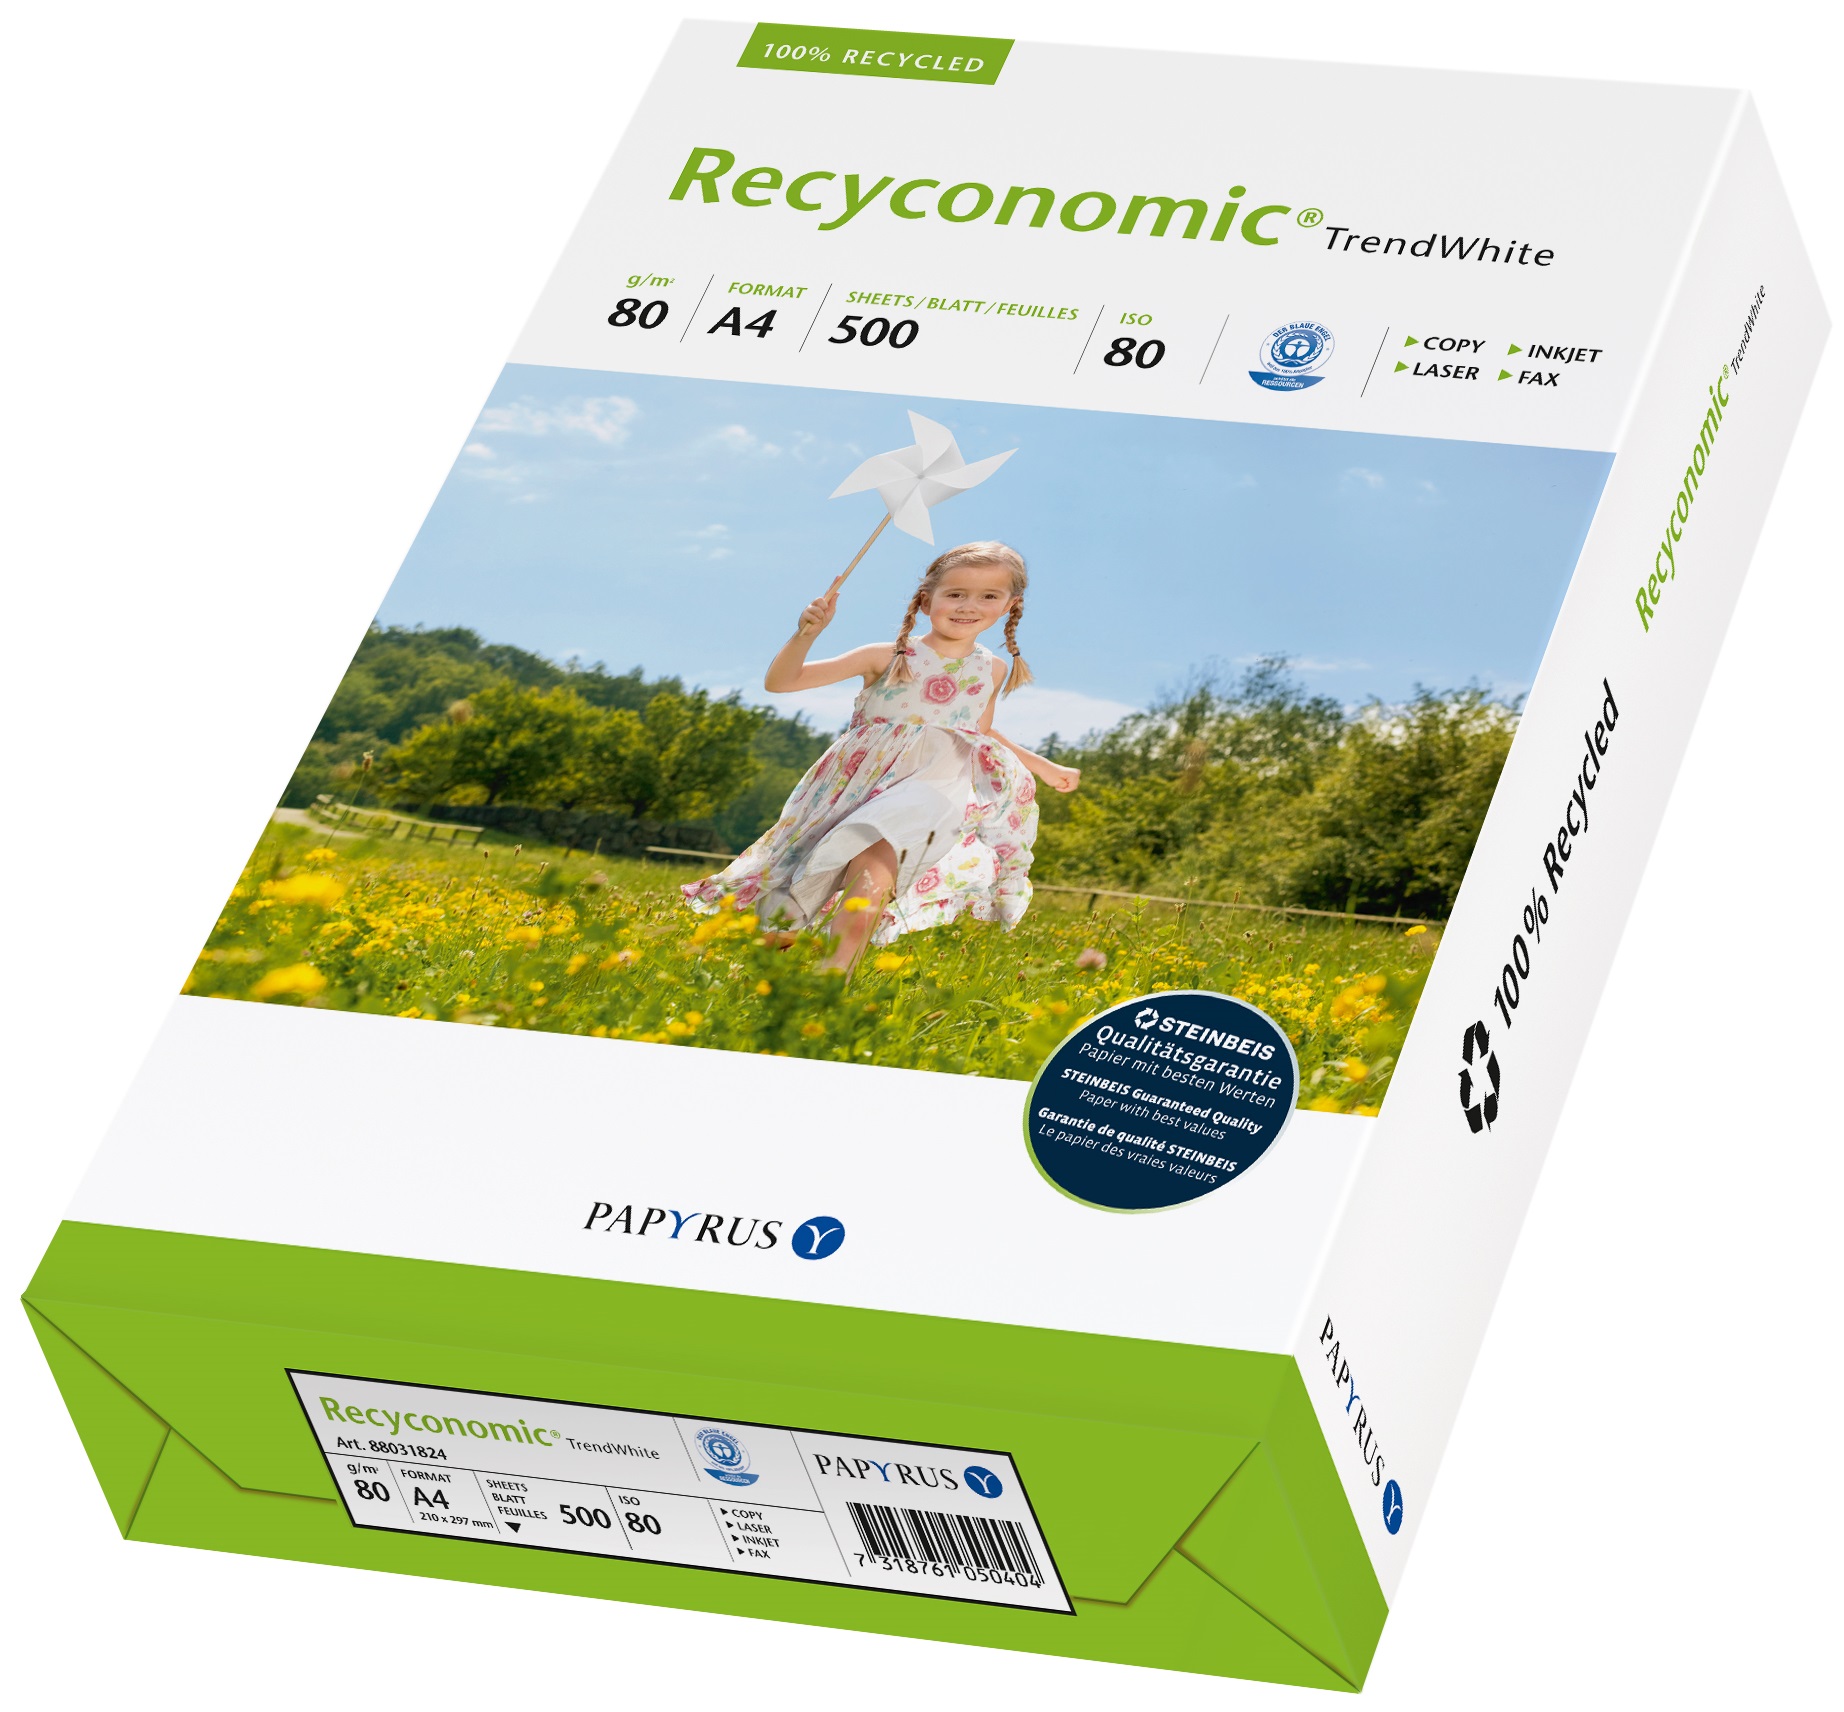 Hartie reciclata A4, 80 g/mp, 500 coli/top, PAPYRUS Recyconomic TrendWhite